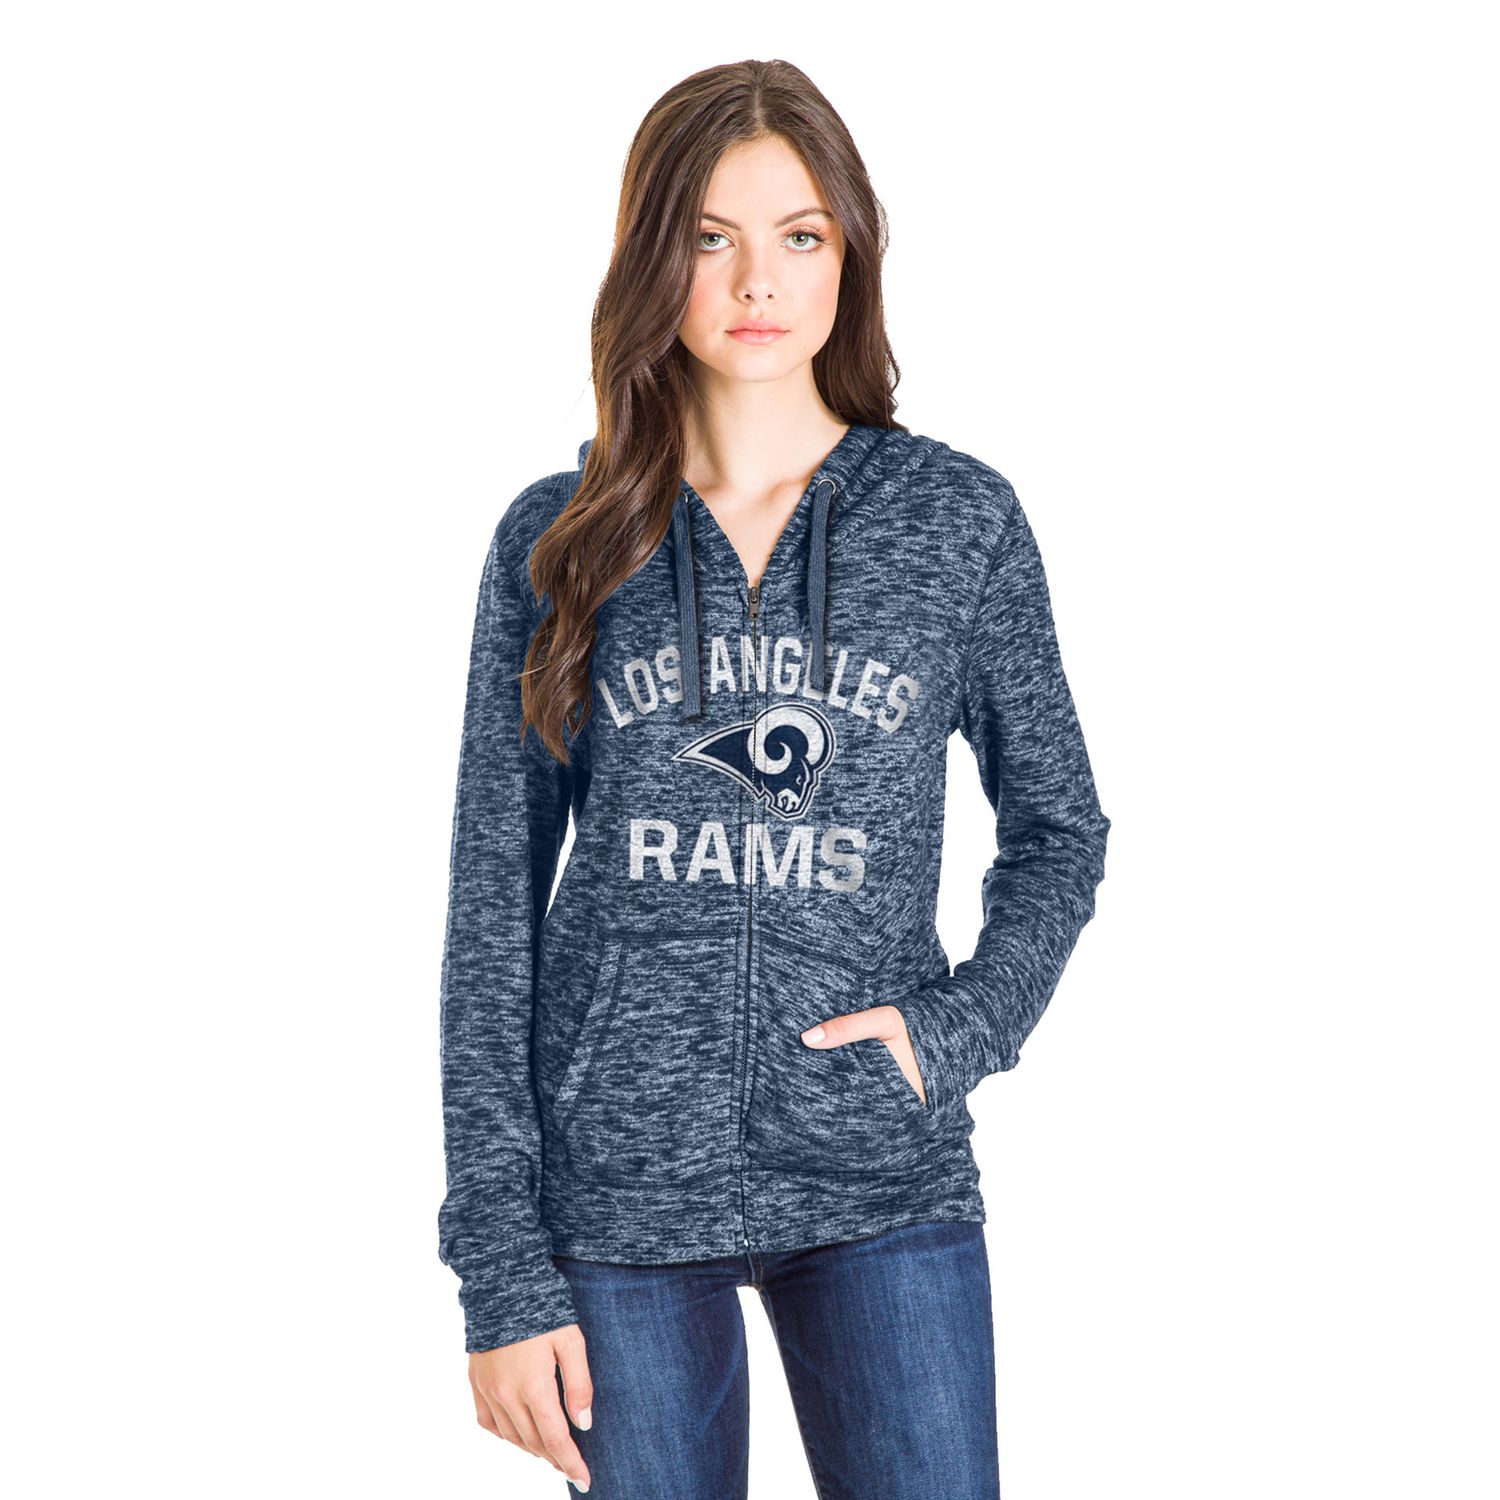 rams women's hoodie